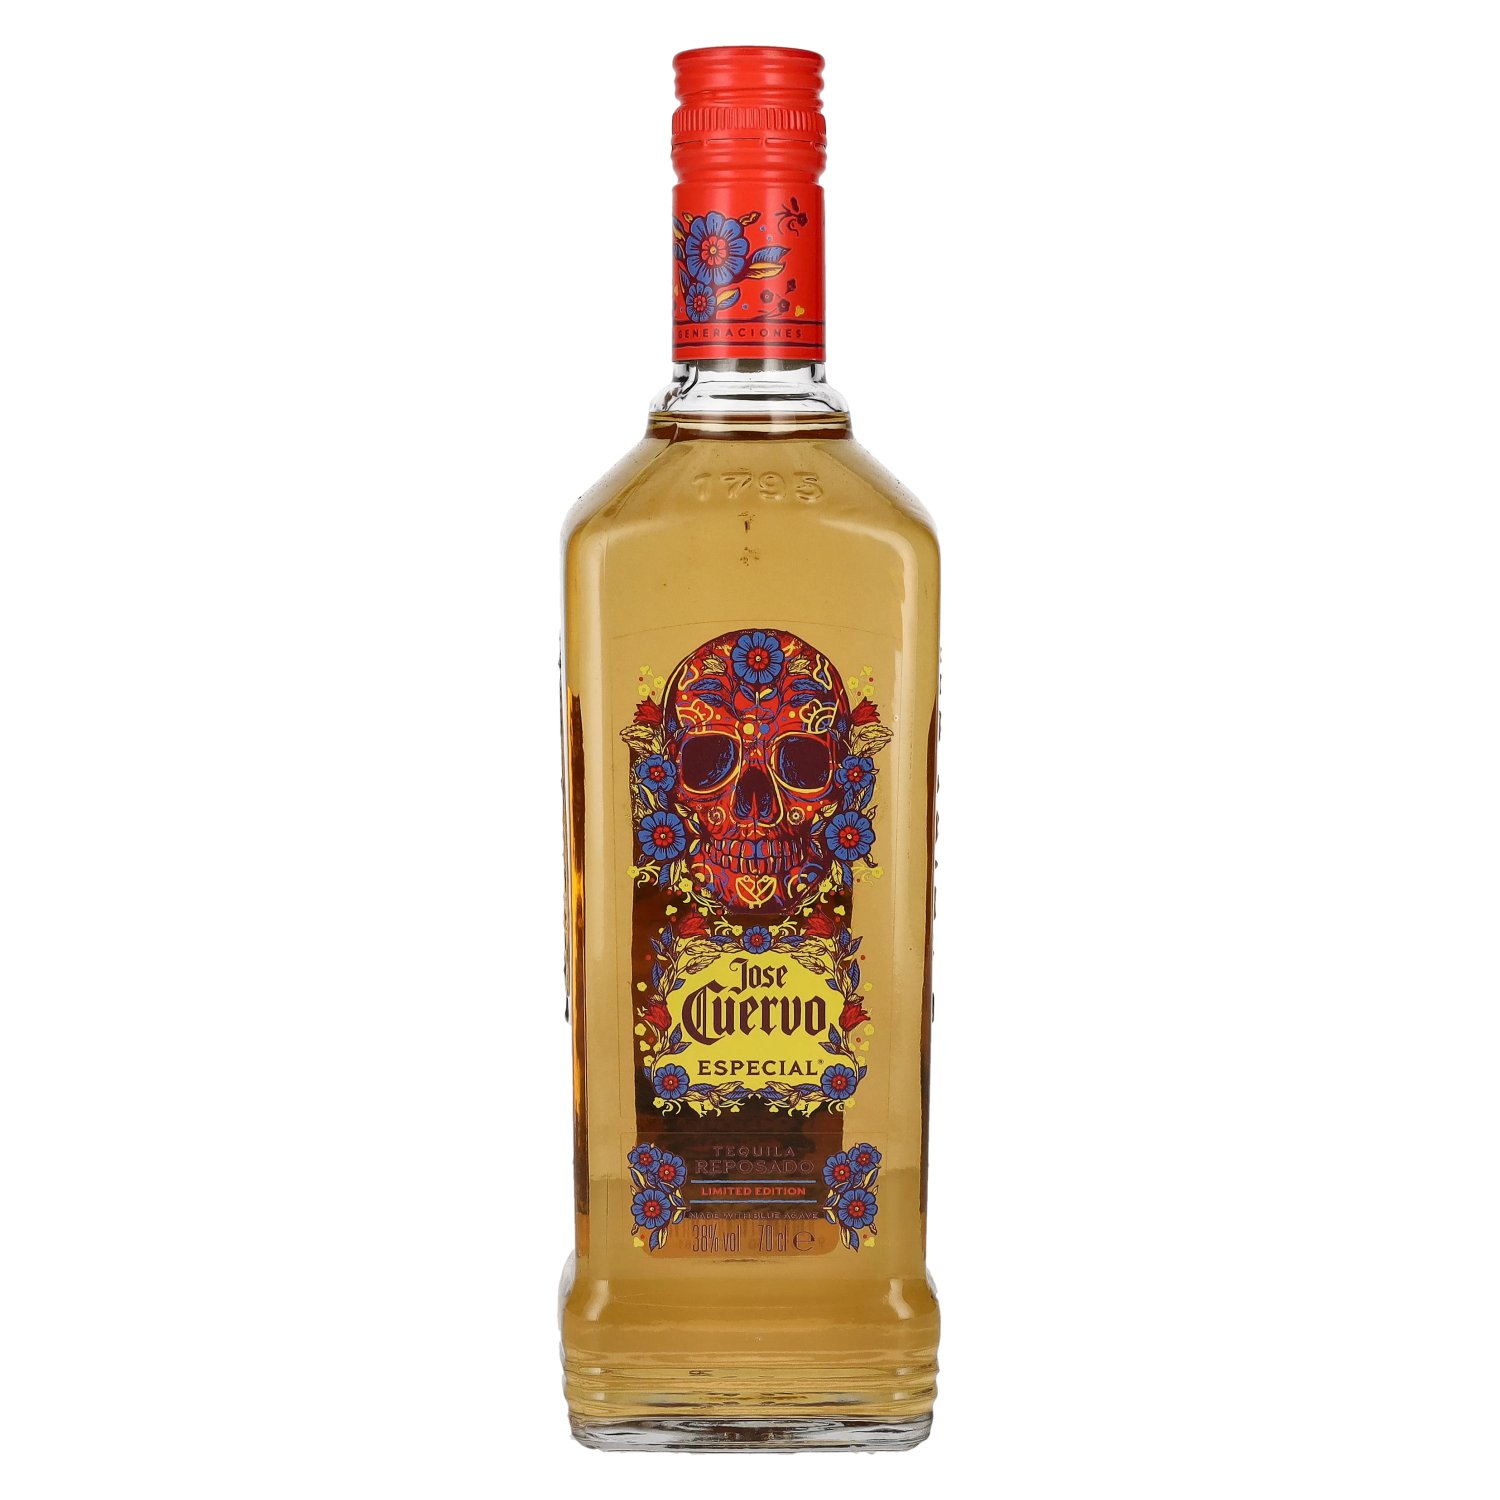 Dead Day 0,7l Especial Vol. of 38% the Cuervo Reposado José Edition Tequila Limited